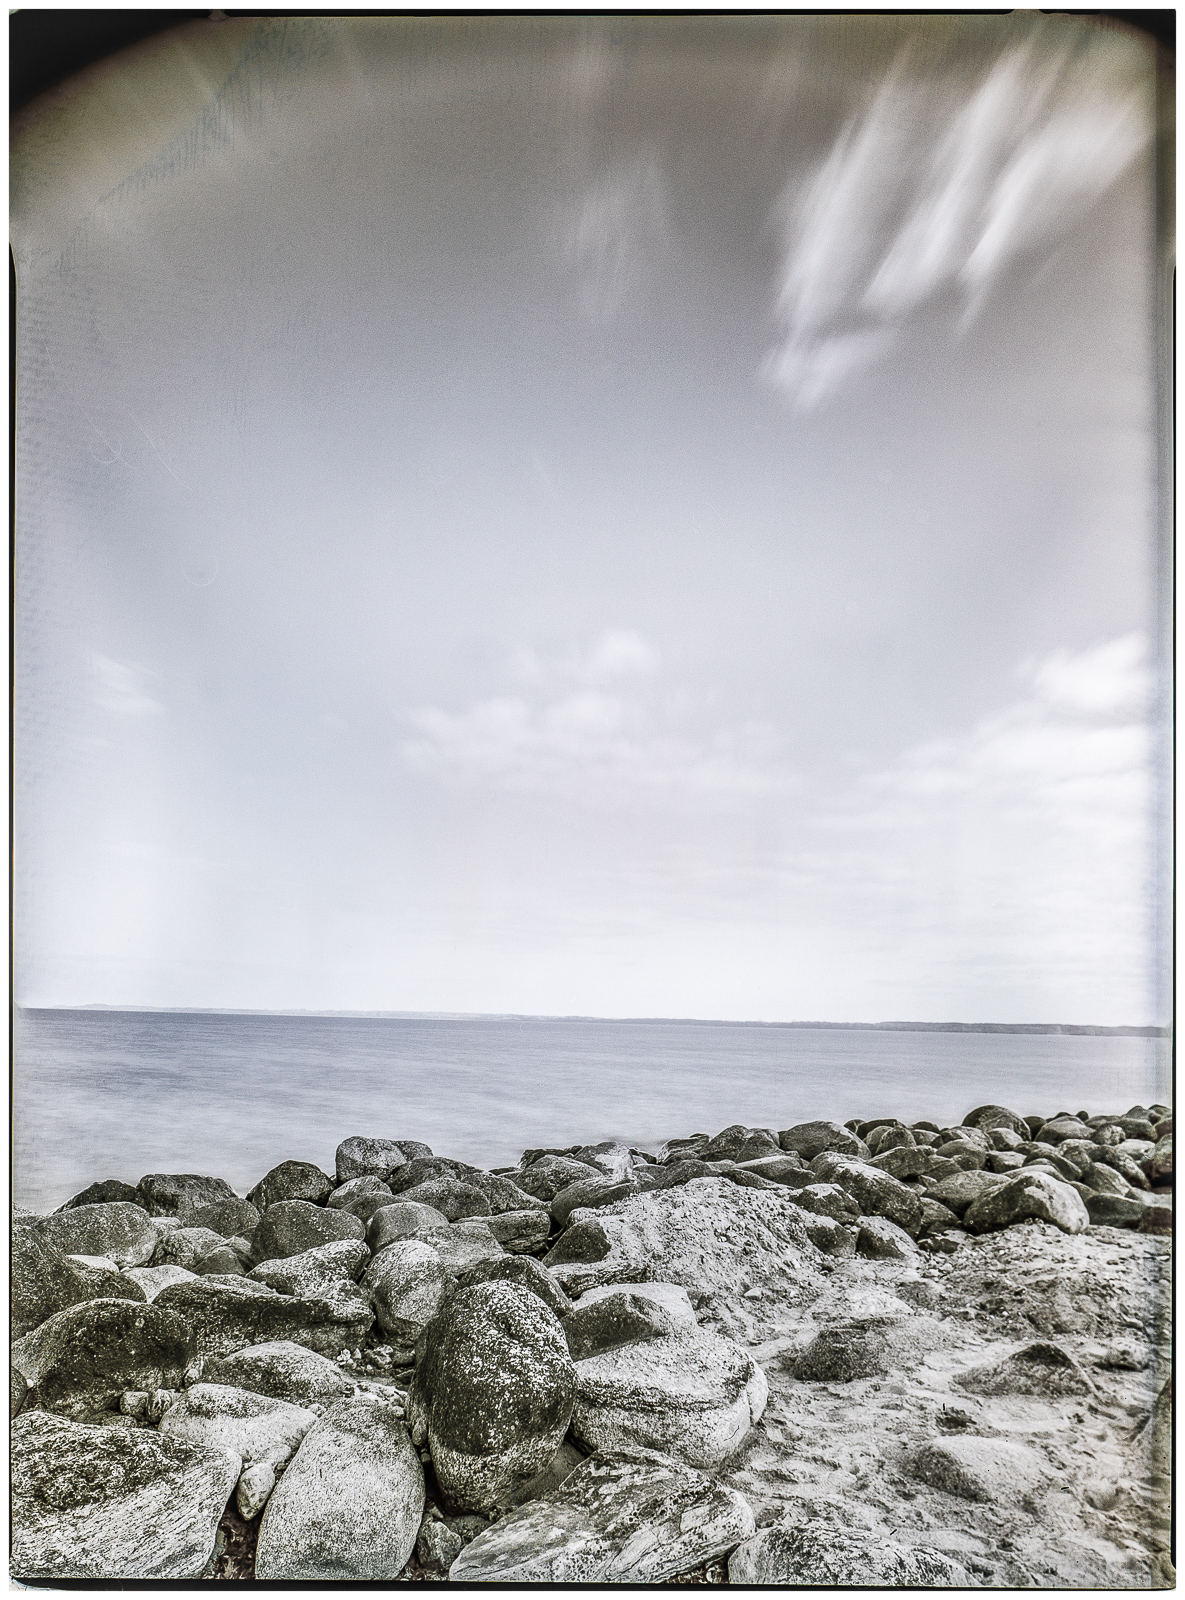 HochformatAufnahme einer Reihe von Steinen am Strand, die sich diagonal von vorn links in die Tiefe des Bildes ziehen. Darüber ein fast klarer Himmel mit wenigen Wolken. Zarte Farbigkeit zwischen HimmelsBlau und SandBraun